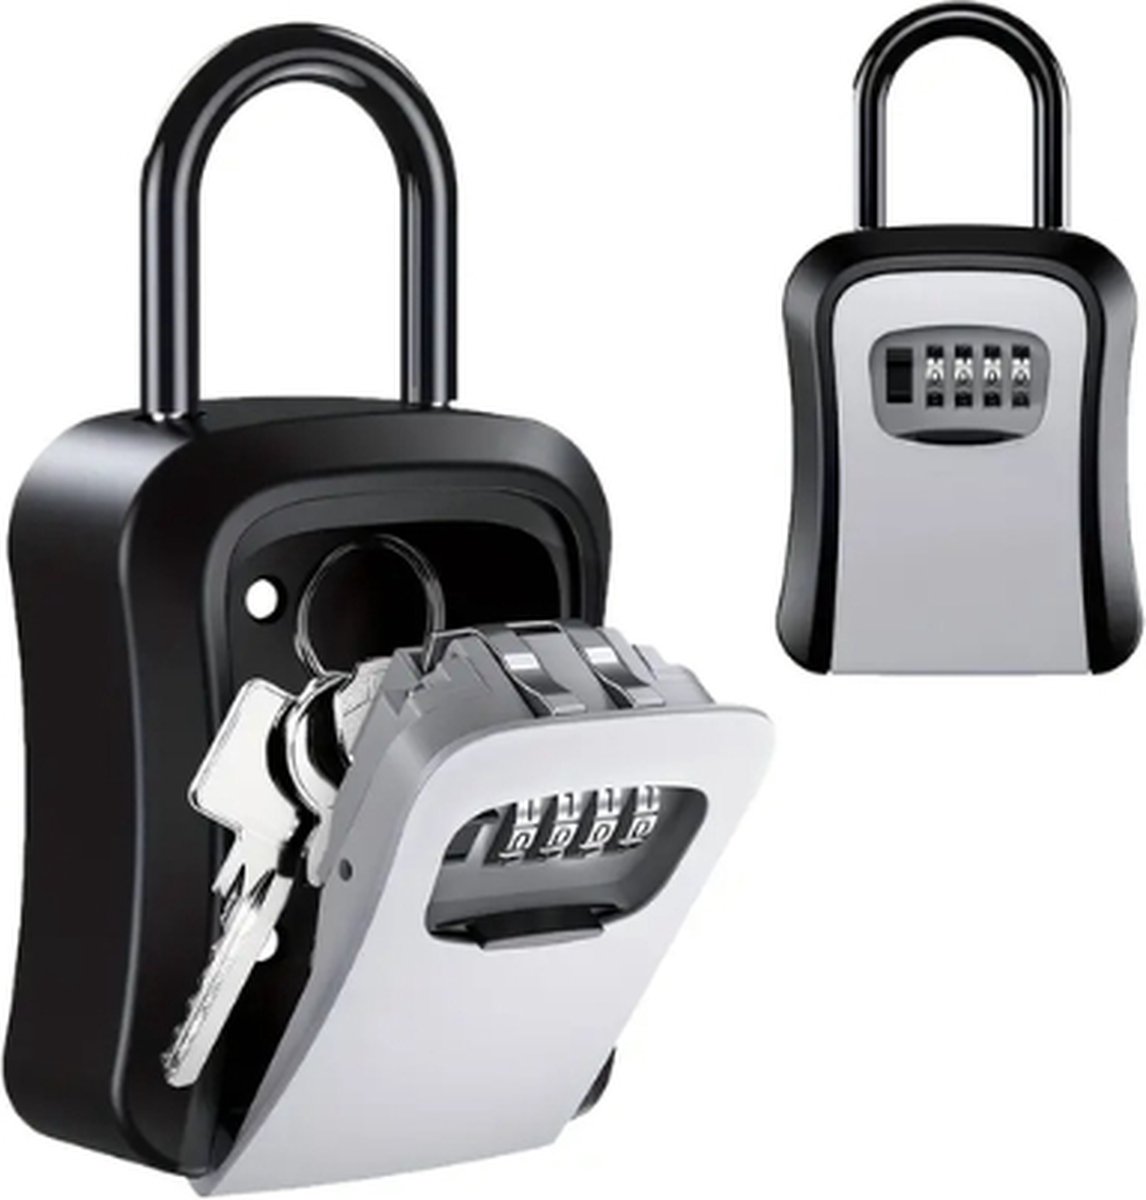 Sleutelkluis - key lock - cijfercode kluis - key lock box - sleutelkluisje voor buiten met ring - keysafe - kluis met code - voor buiten en binnen - waterdicht en roestvrij - grijs